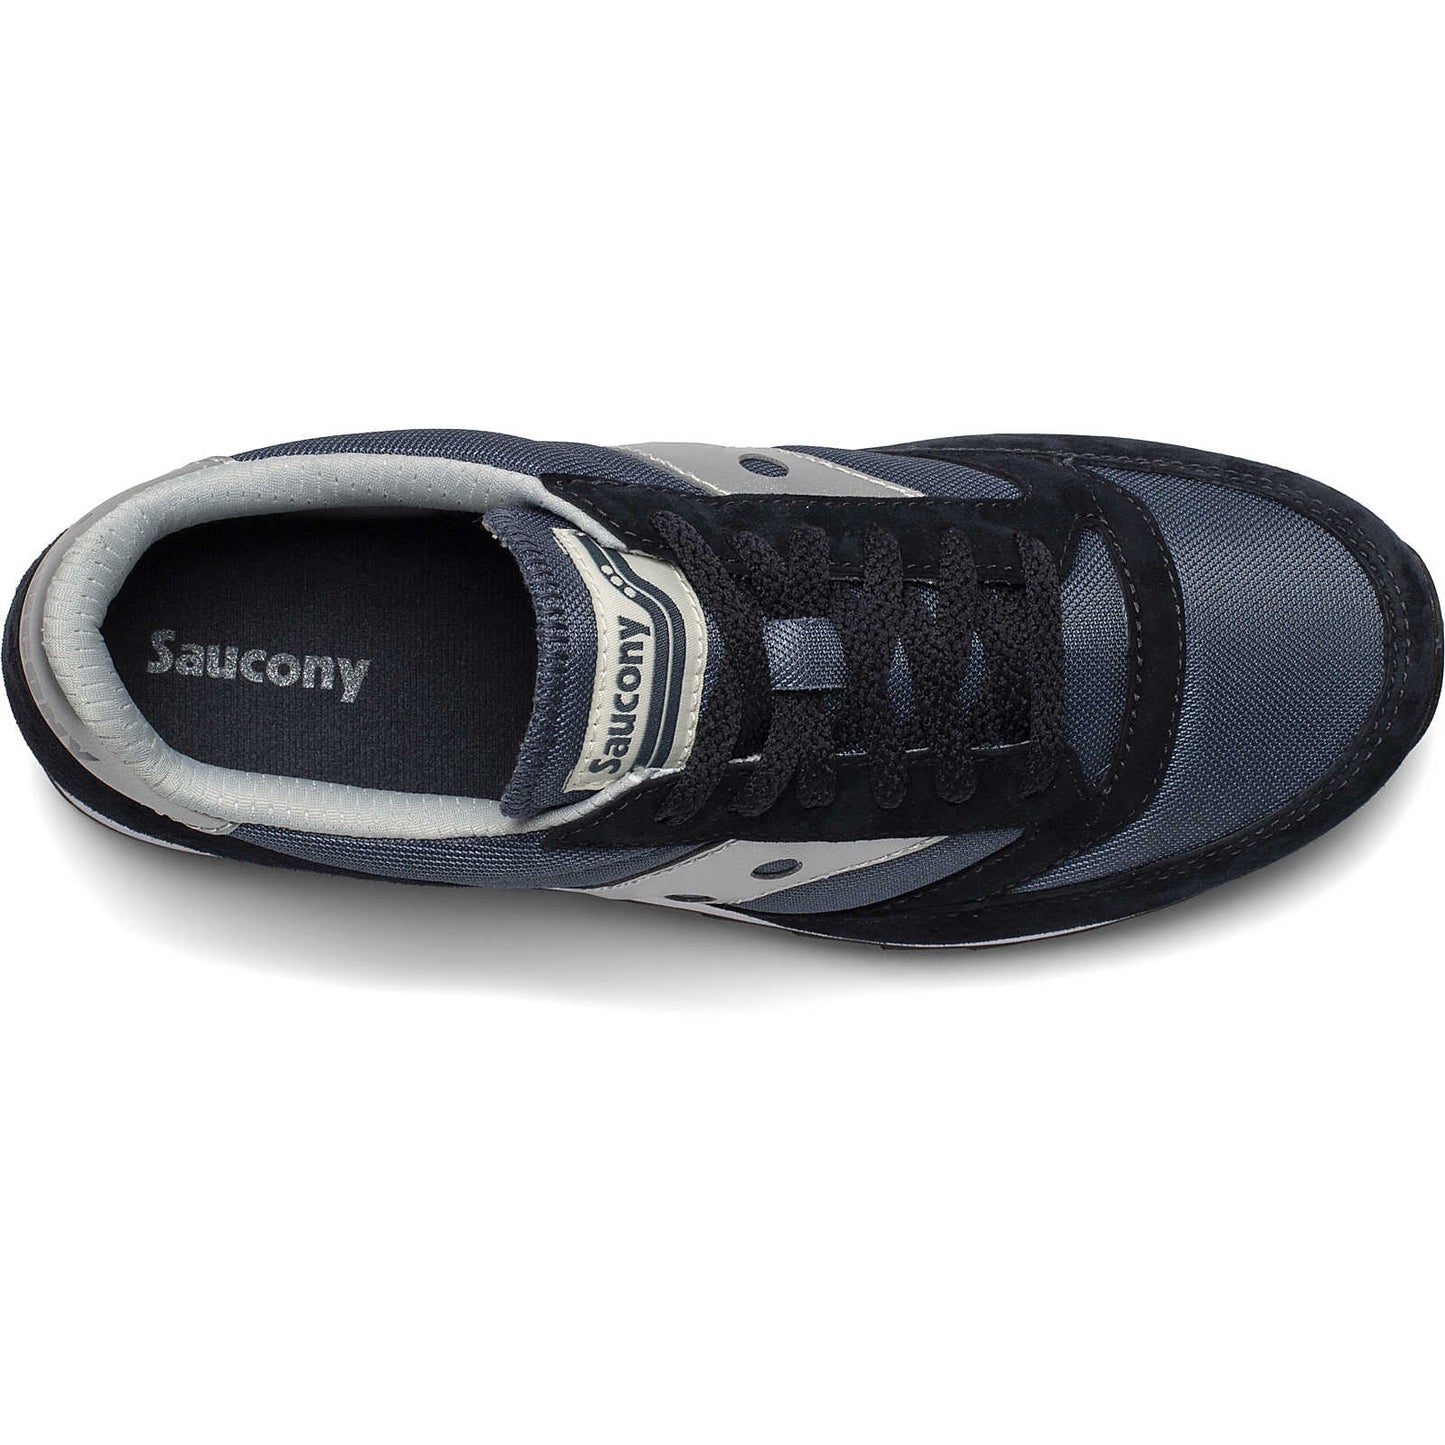 Saucony Originals Jazz 81 Navy Silver S70563-1 New Men's Retro Sneakers Size 10.5